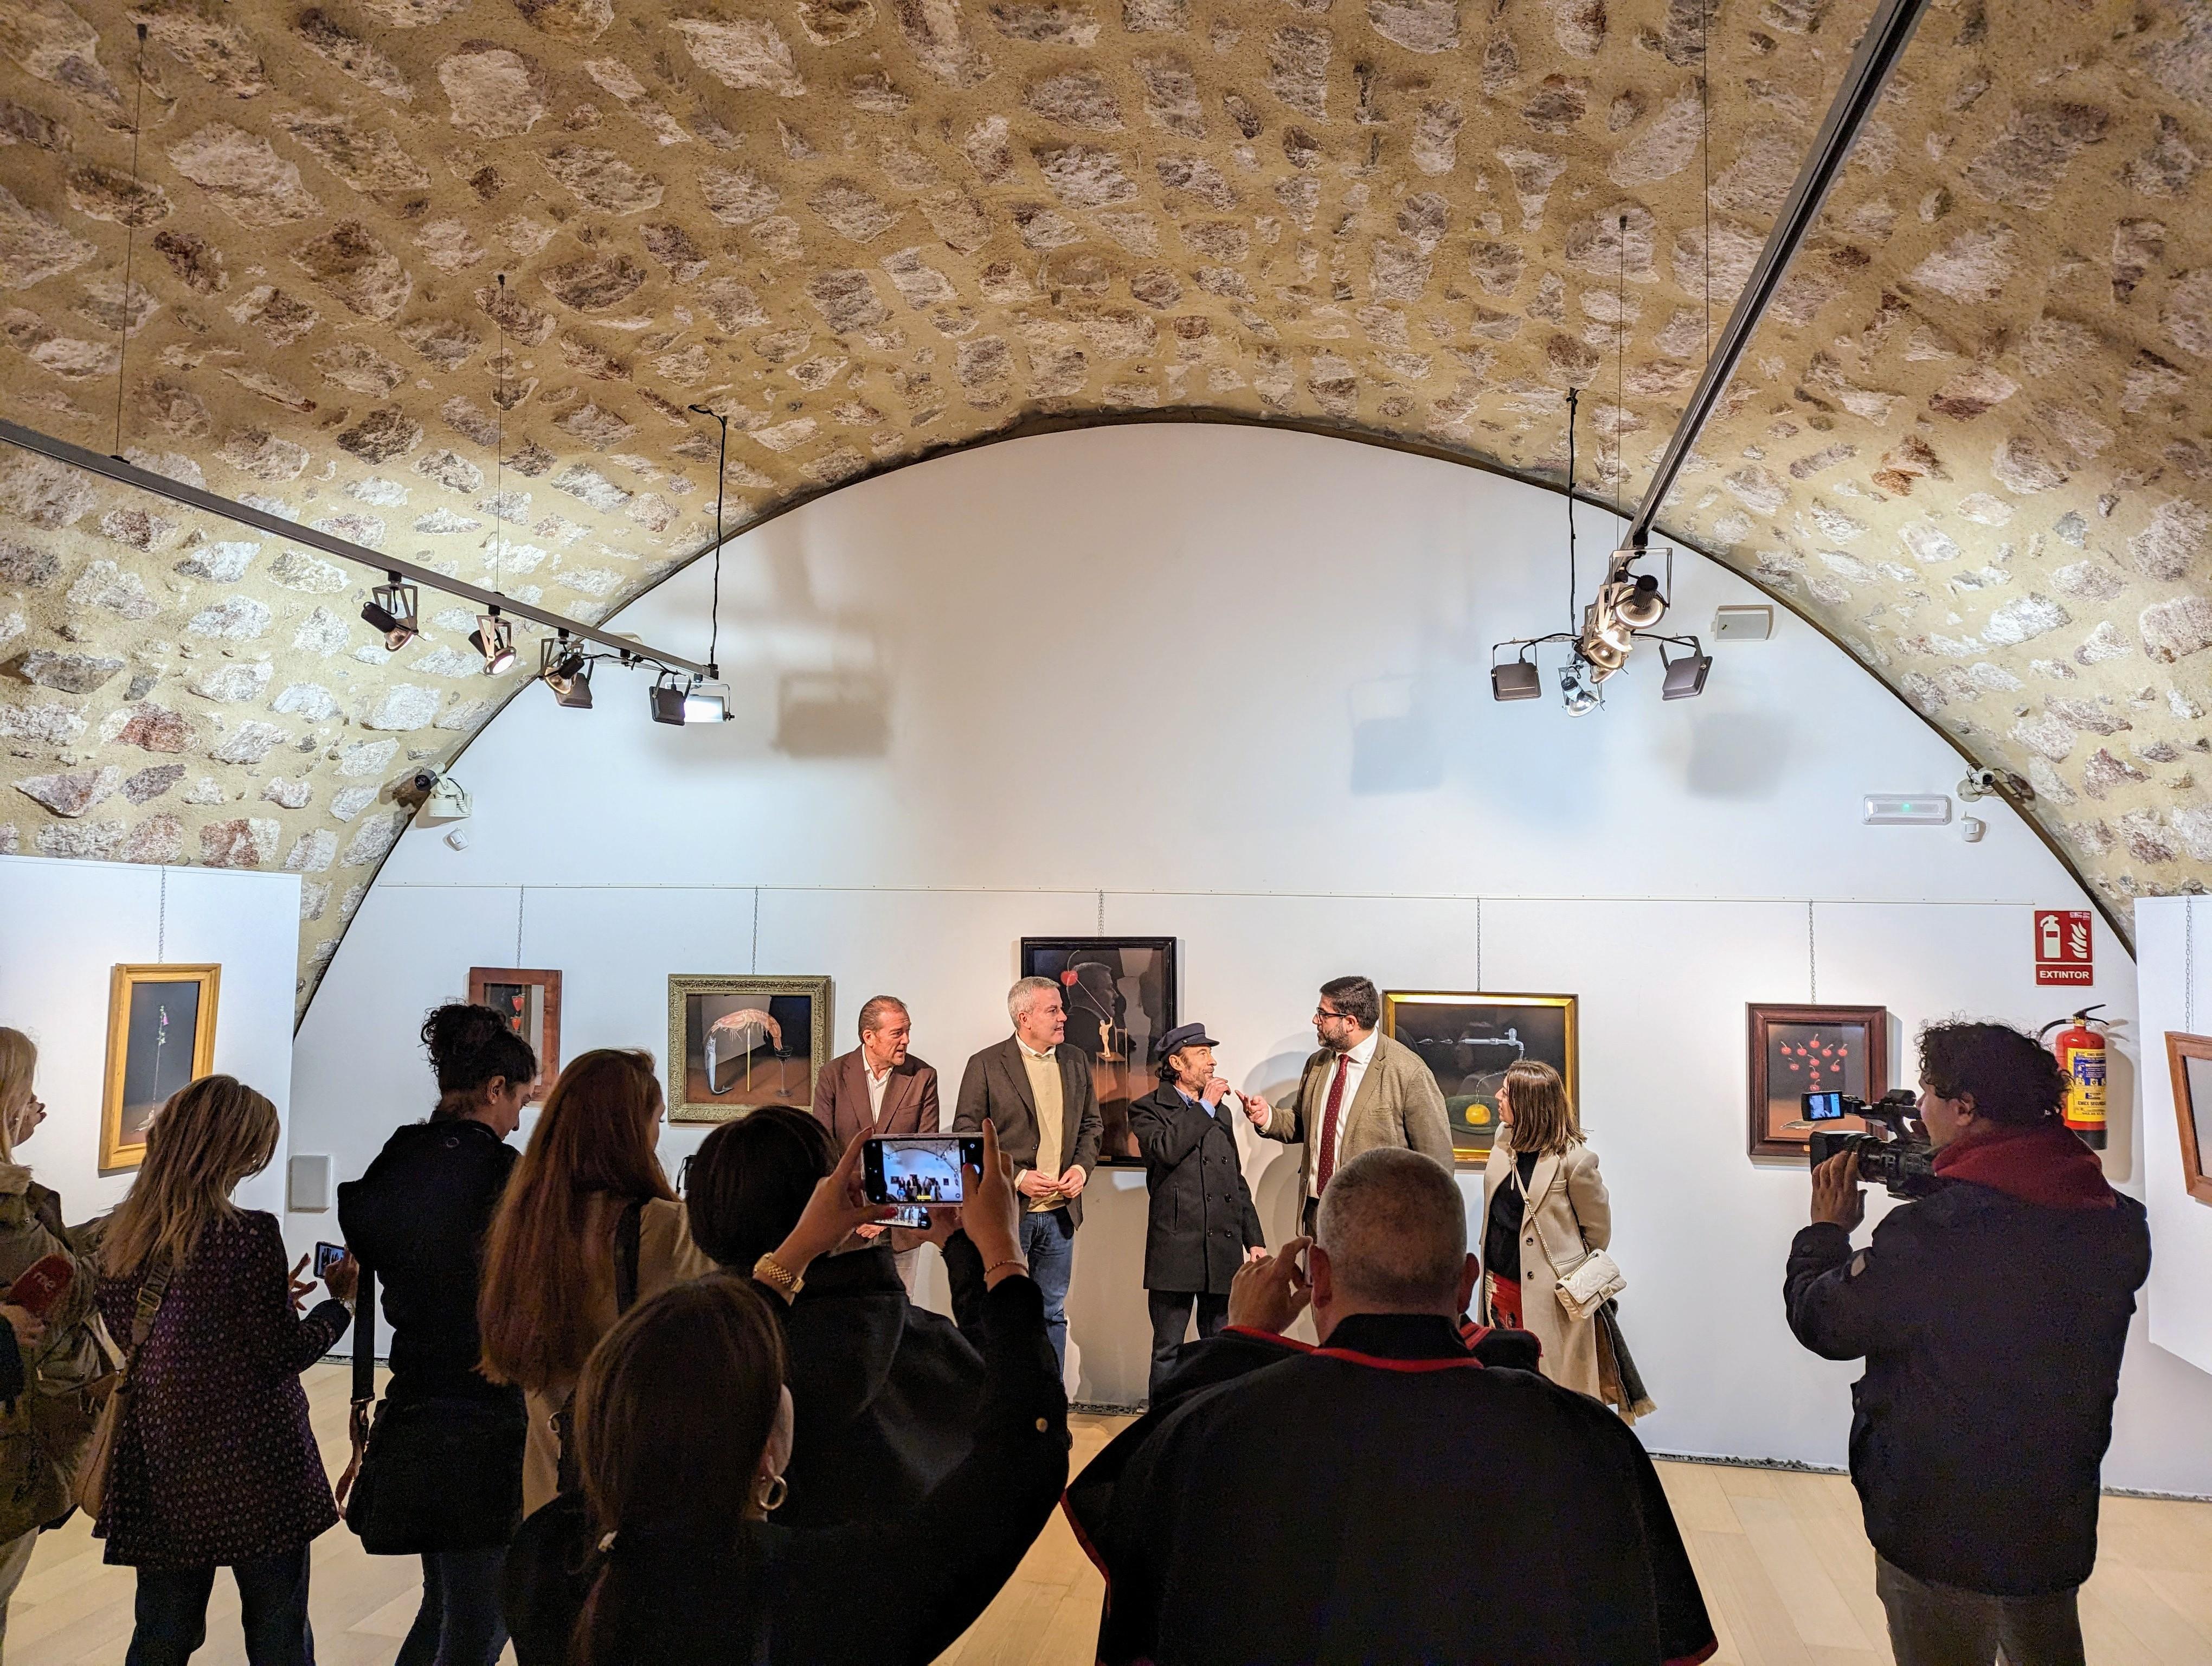 Un ano máis acompañamos en Ávila ao artista Diego De Giráldez na inauguración da súa exposición “De los primeros dibujos a la pintura actual”  